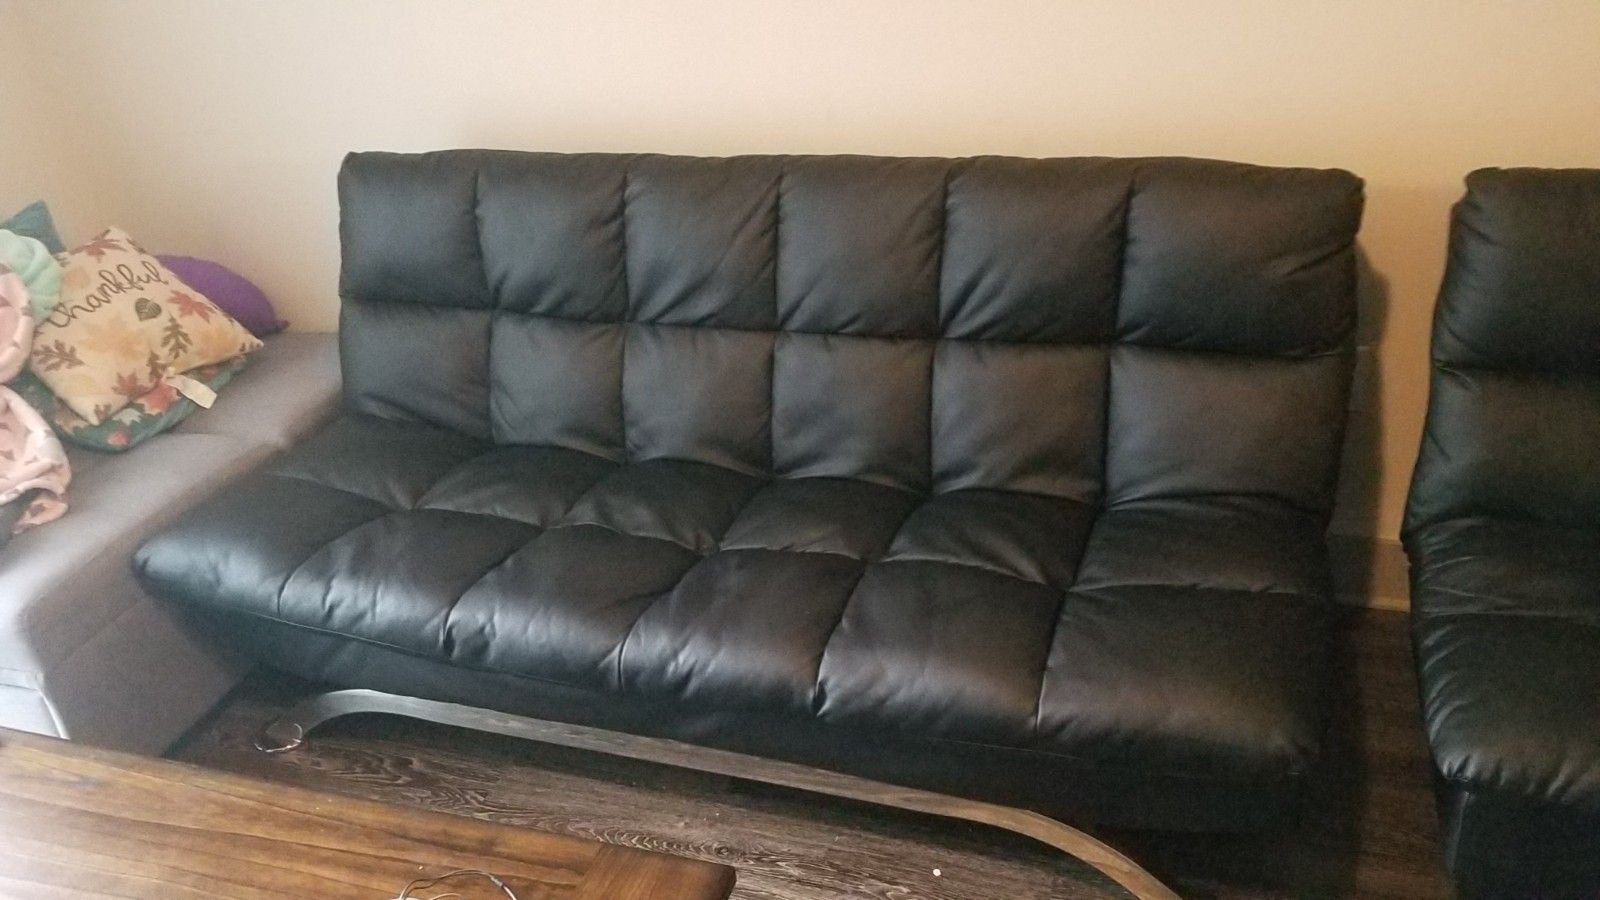 Faux Leather sofa